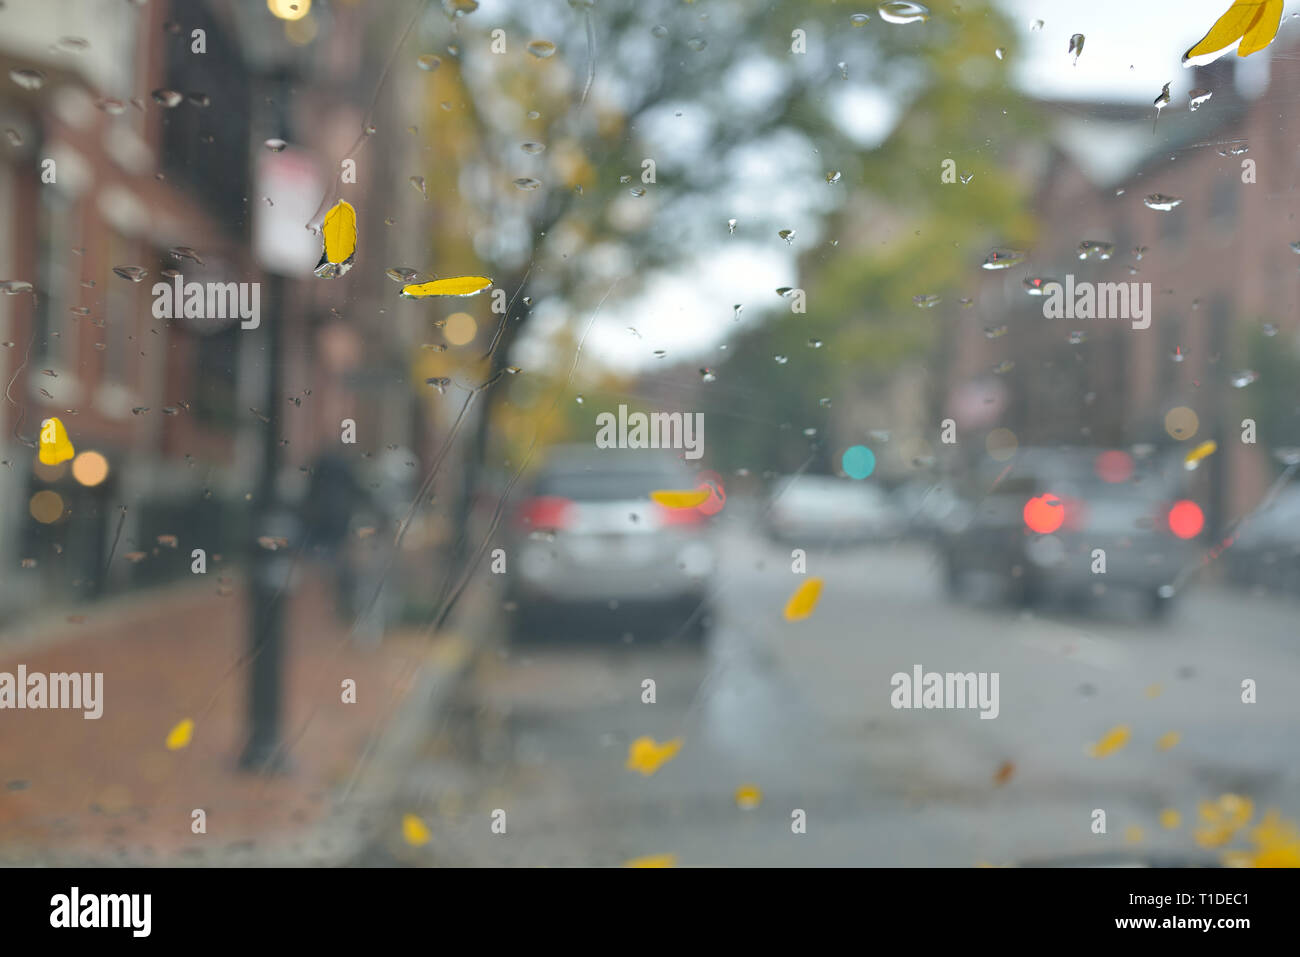 Pluie d'automne, abstract background. Pare-brise humide, des feuilles jaunes et de gouttes, boston city street Banque D'Images